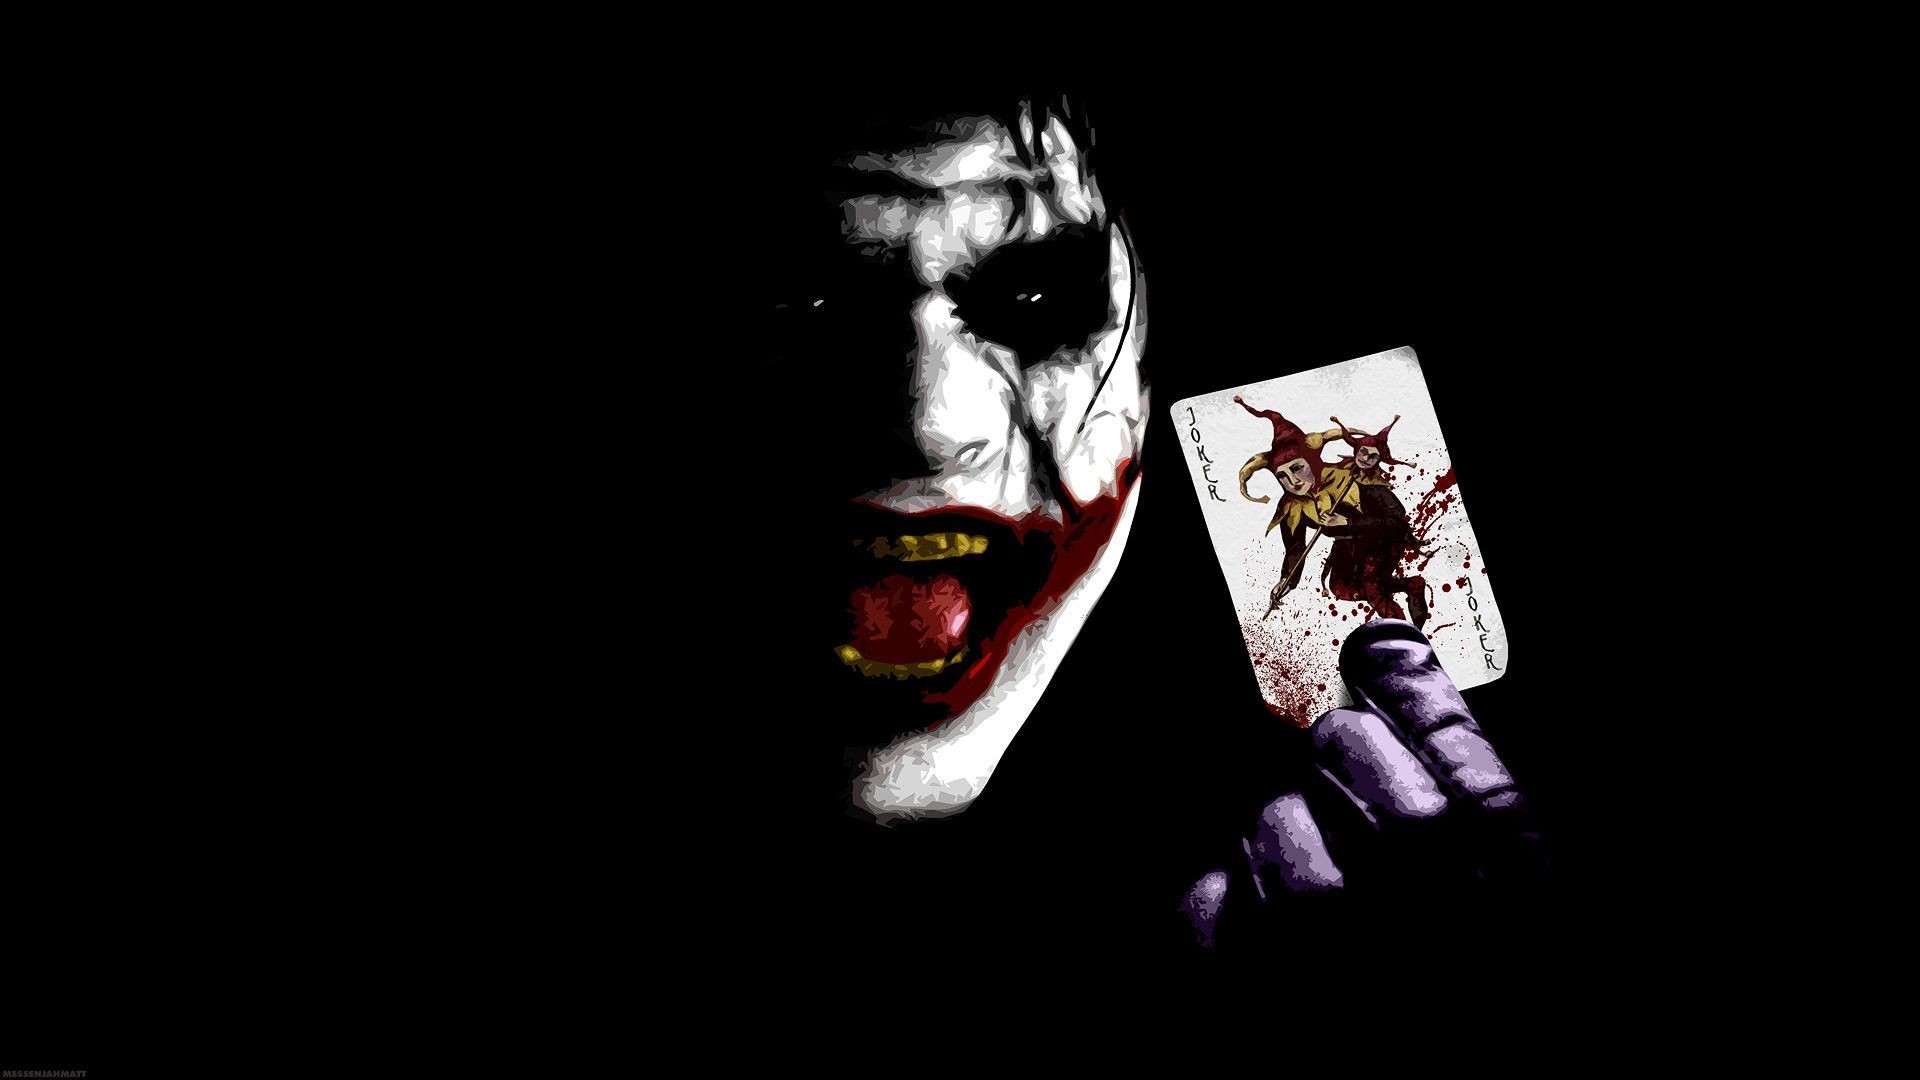 1920x1080 Joker Wallpaper in Dangerous Mod with Joker card. on